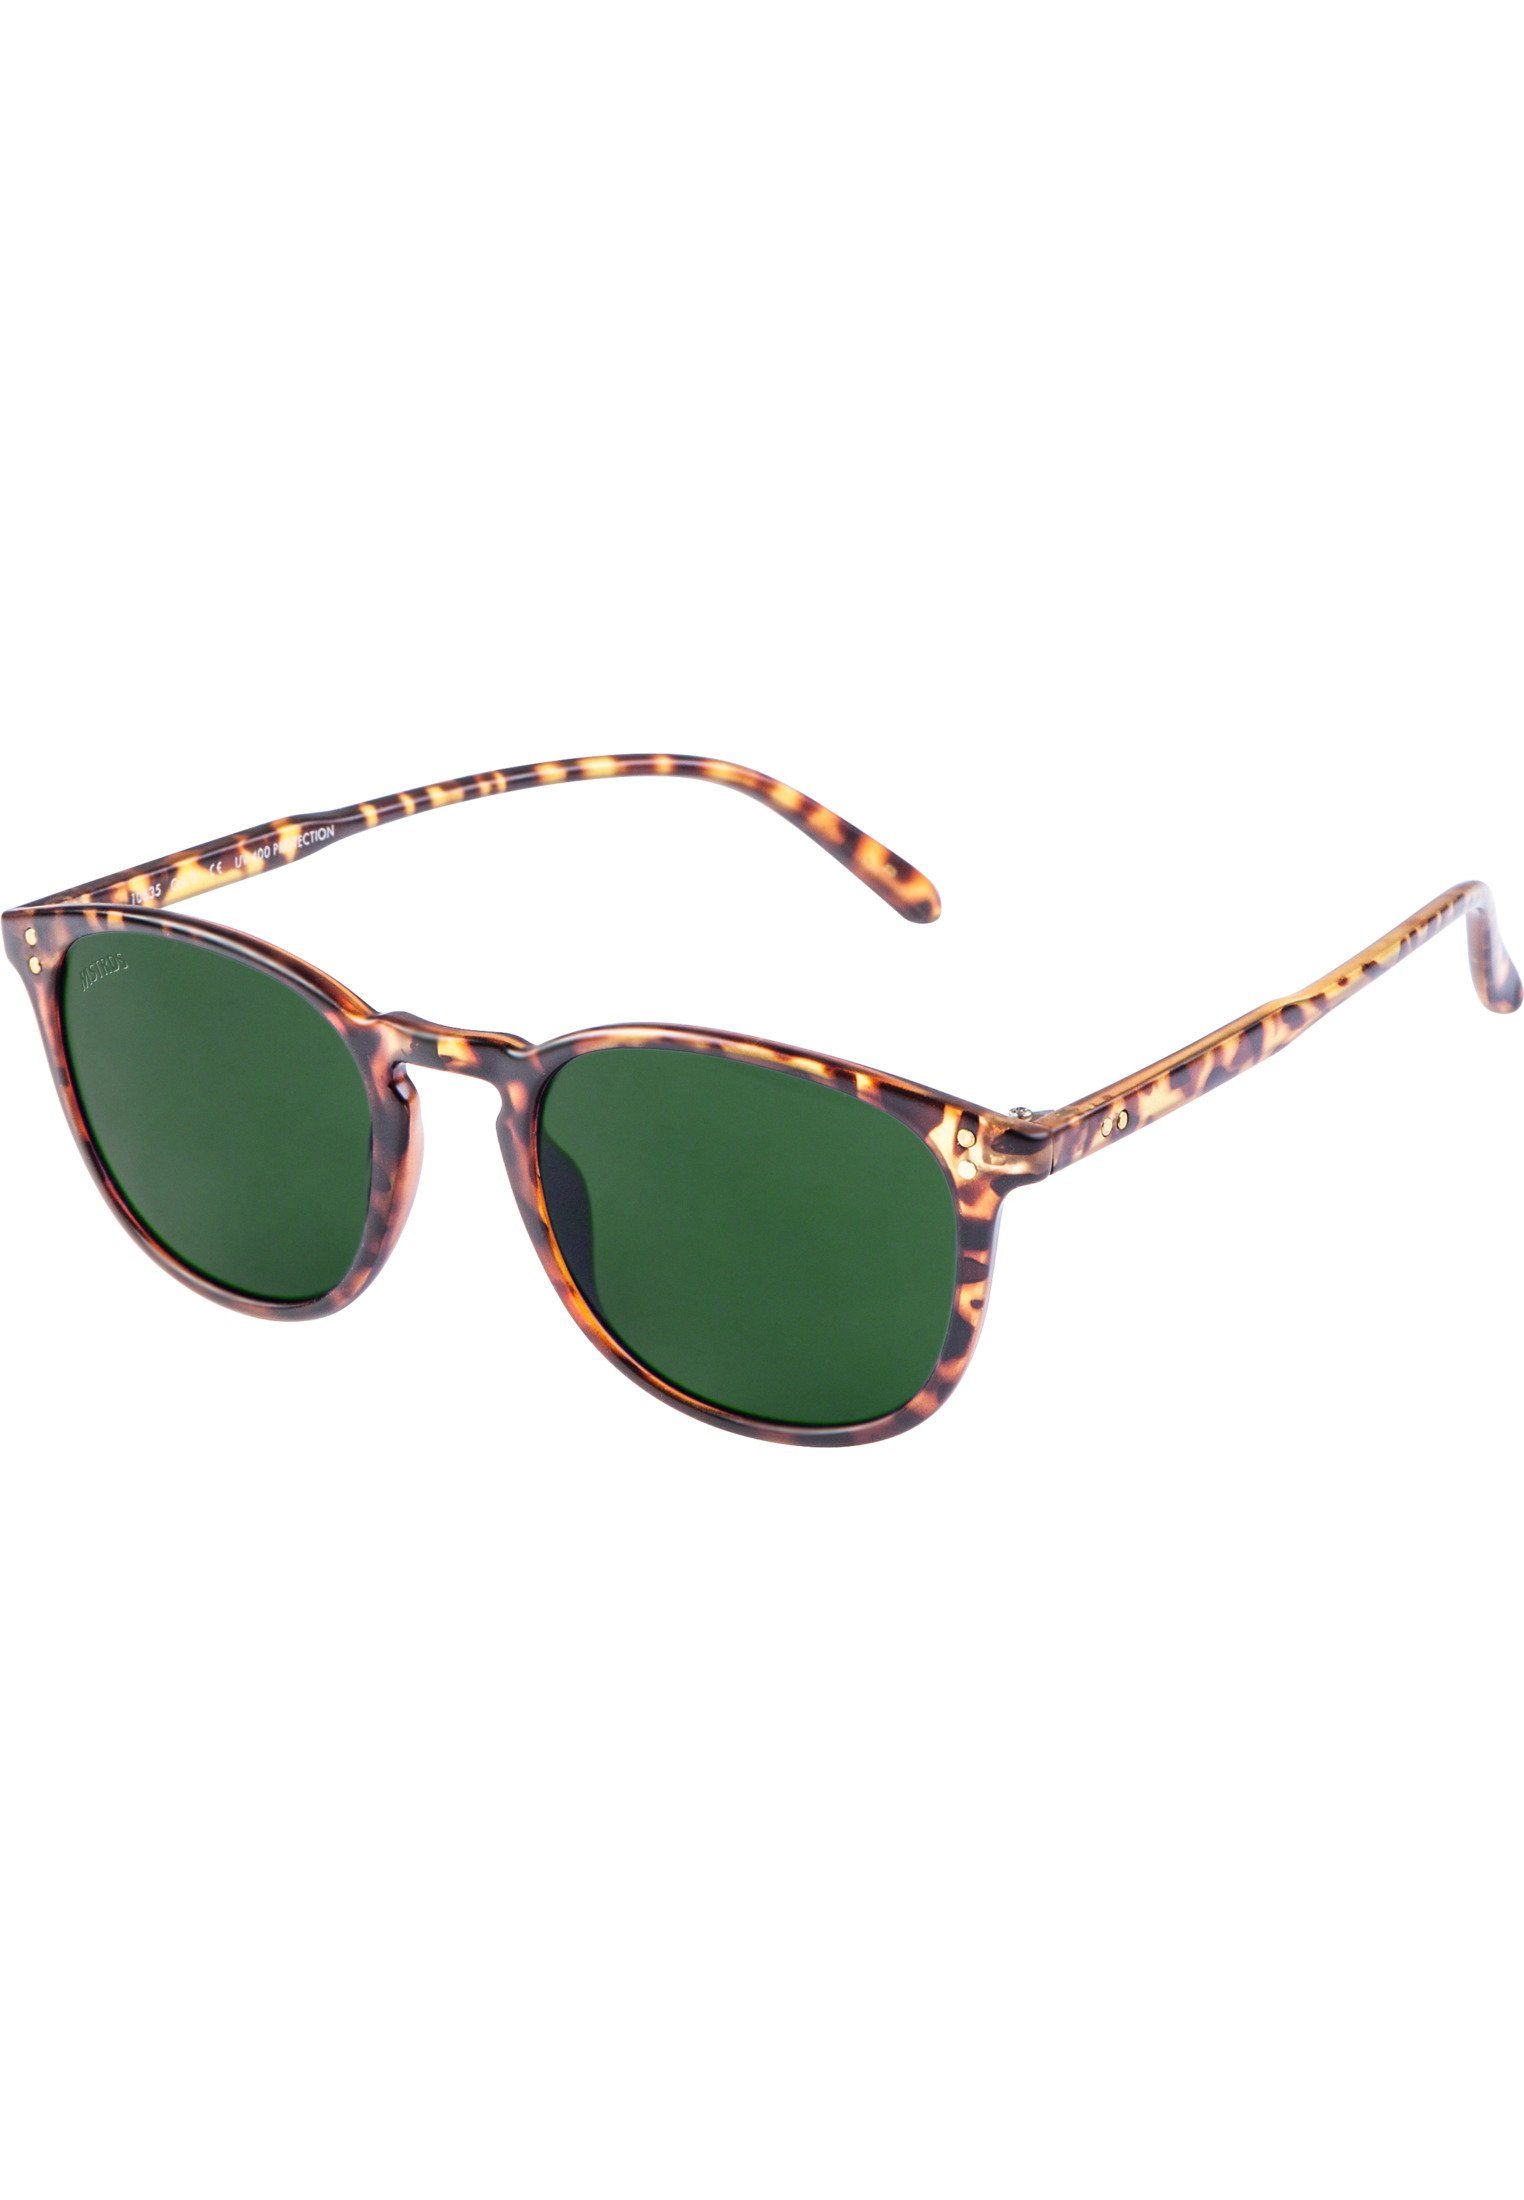 Sunglasses MSTRDS Arthur Accessoires havanna/green Sonnenbrille